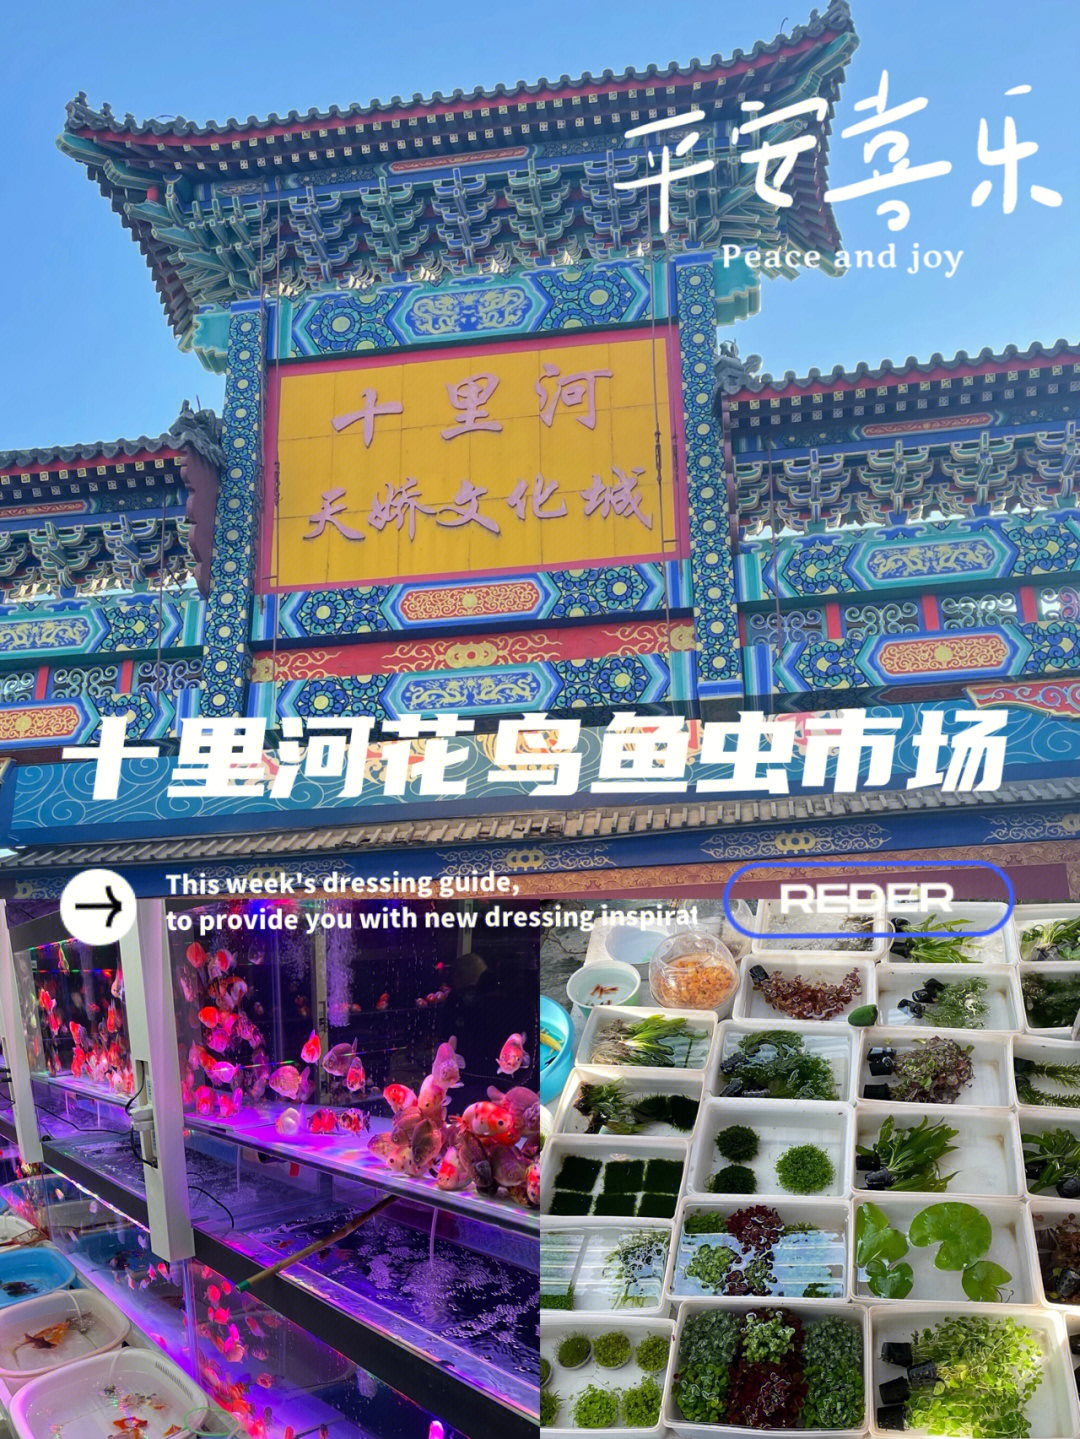 北京周末好去处十里河花鸟鱼虫市场